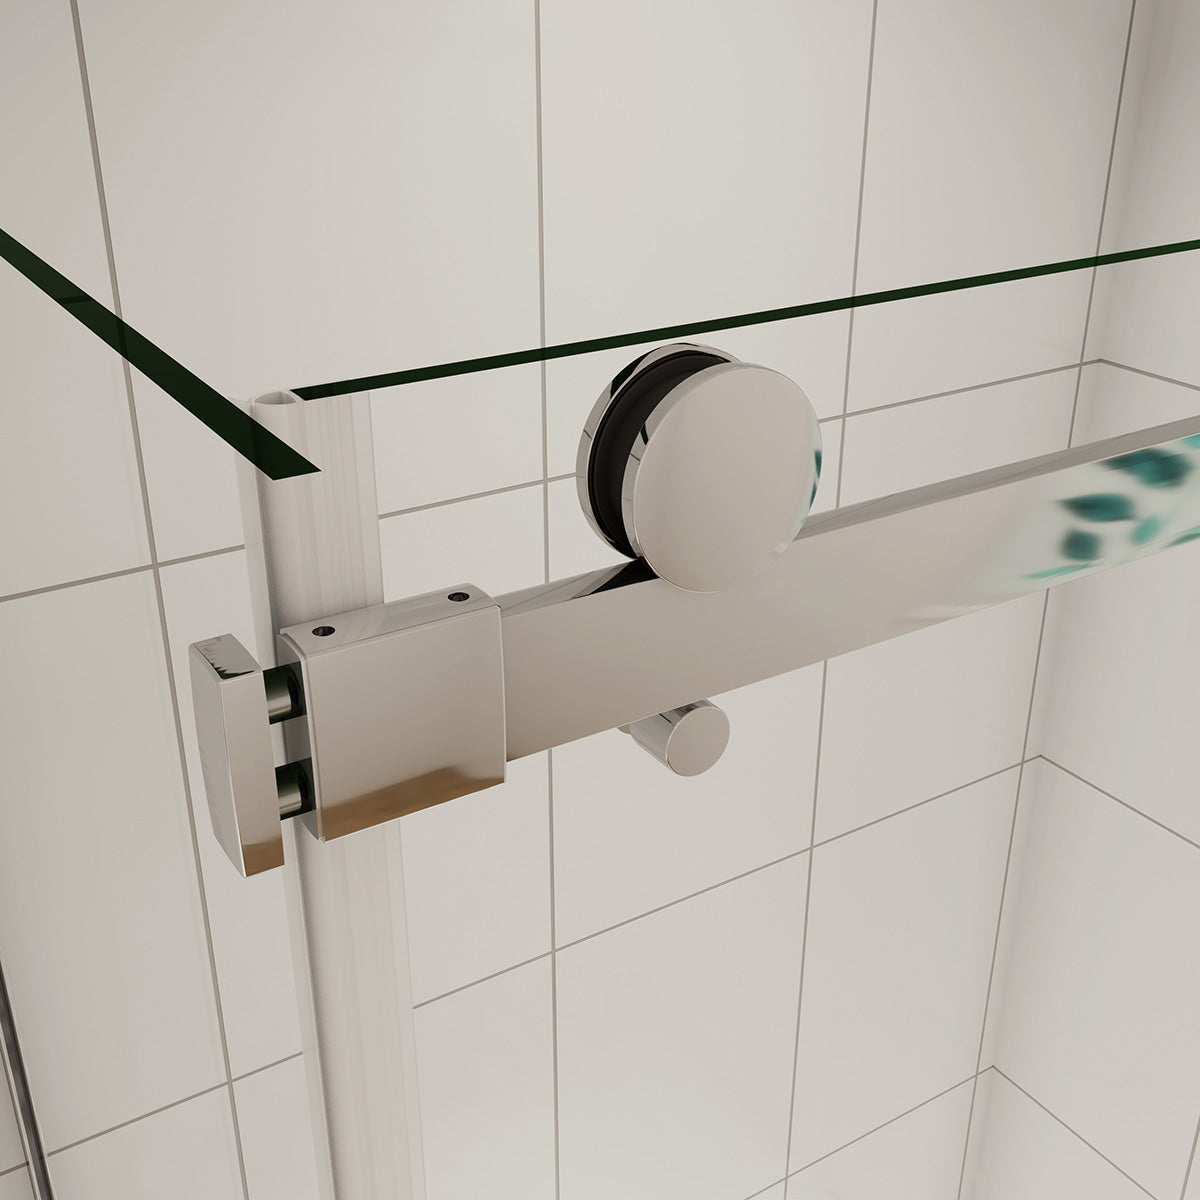 Duschtür+Seitenwand Dusche Duschabtrennung 130x90 cm Glasstärke 6mm Schiebetür Duschkabine